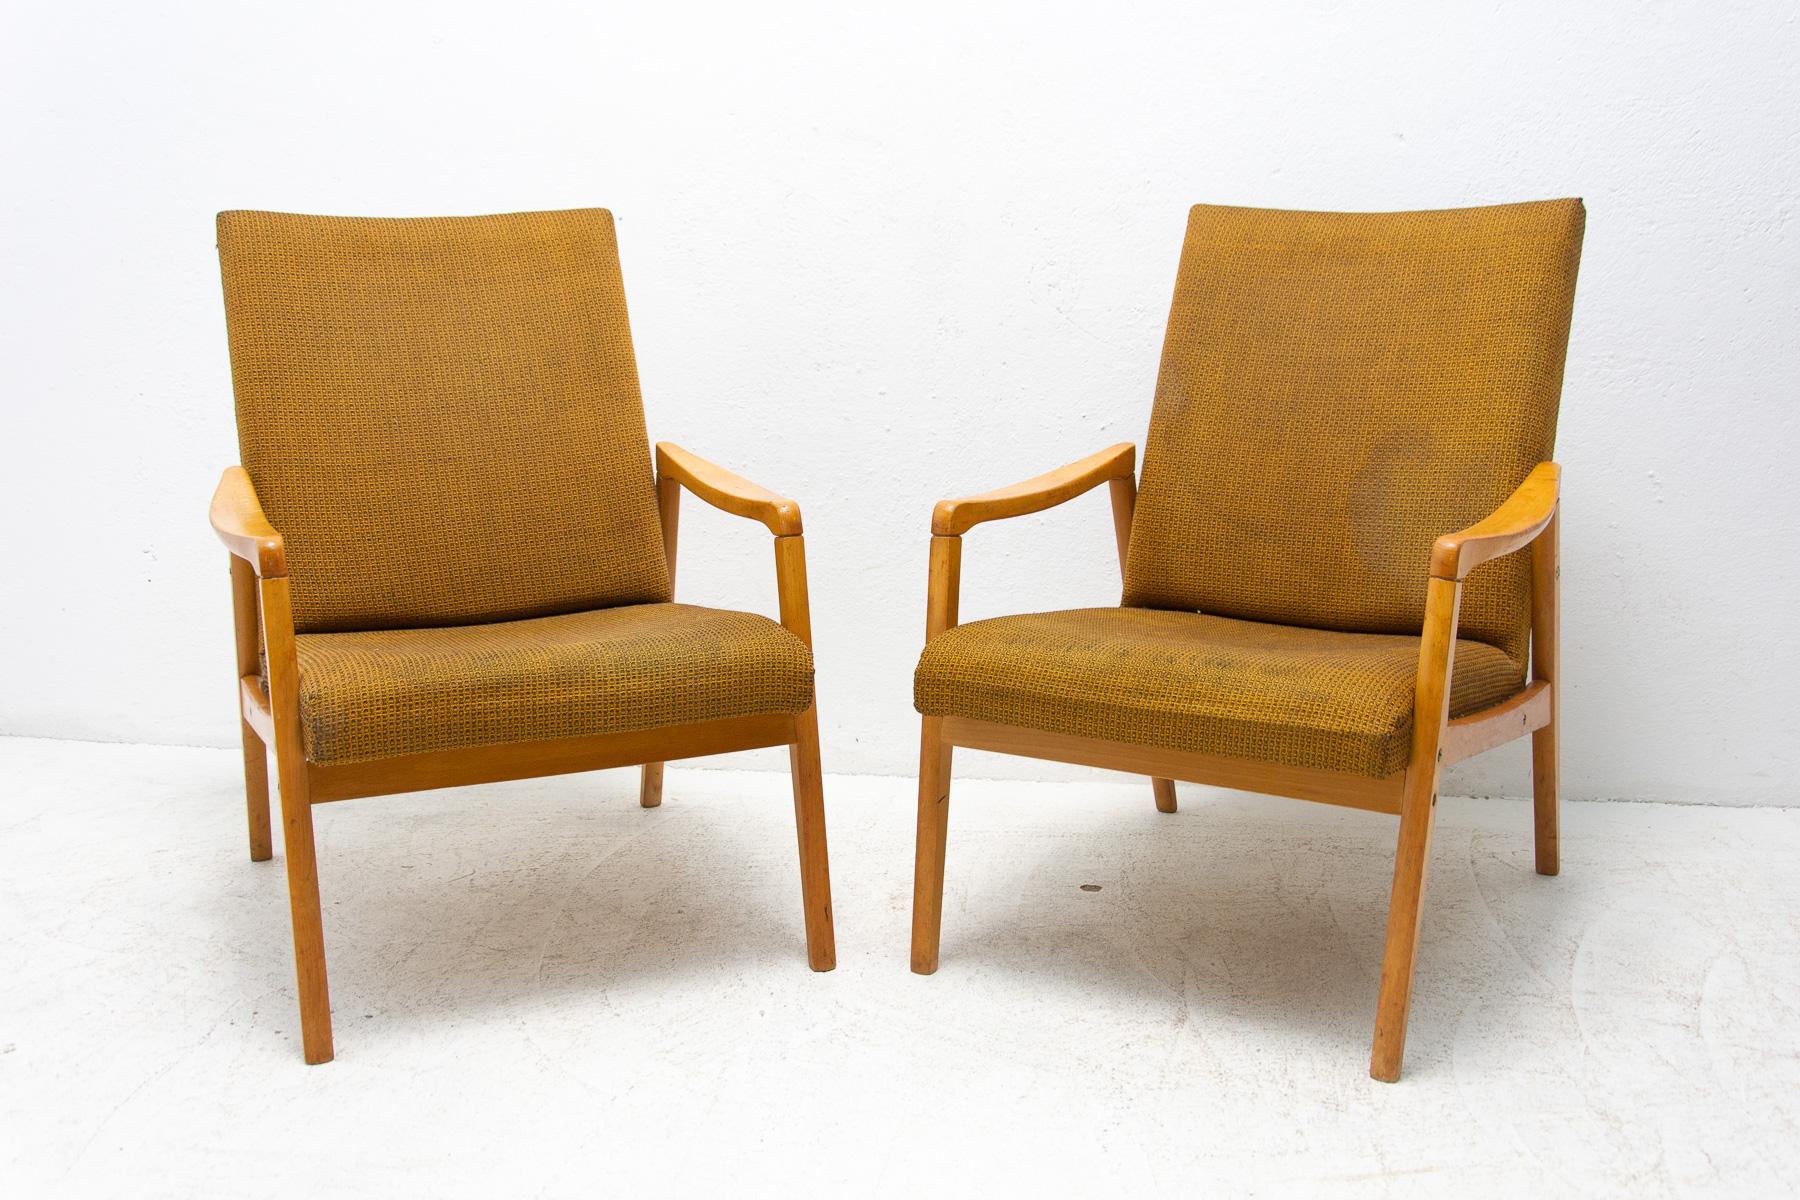 Paire de fauteuils fabriqués dans l'ancienne Tchécoslovaquie dans les années 1970. Il a été conçu par Jirí Jiroutek pour Interiér Praha et fait partie de l'ensemble de salons U-550. La structure est en bois de hêtre et les chaises sont recouvertes